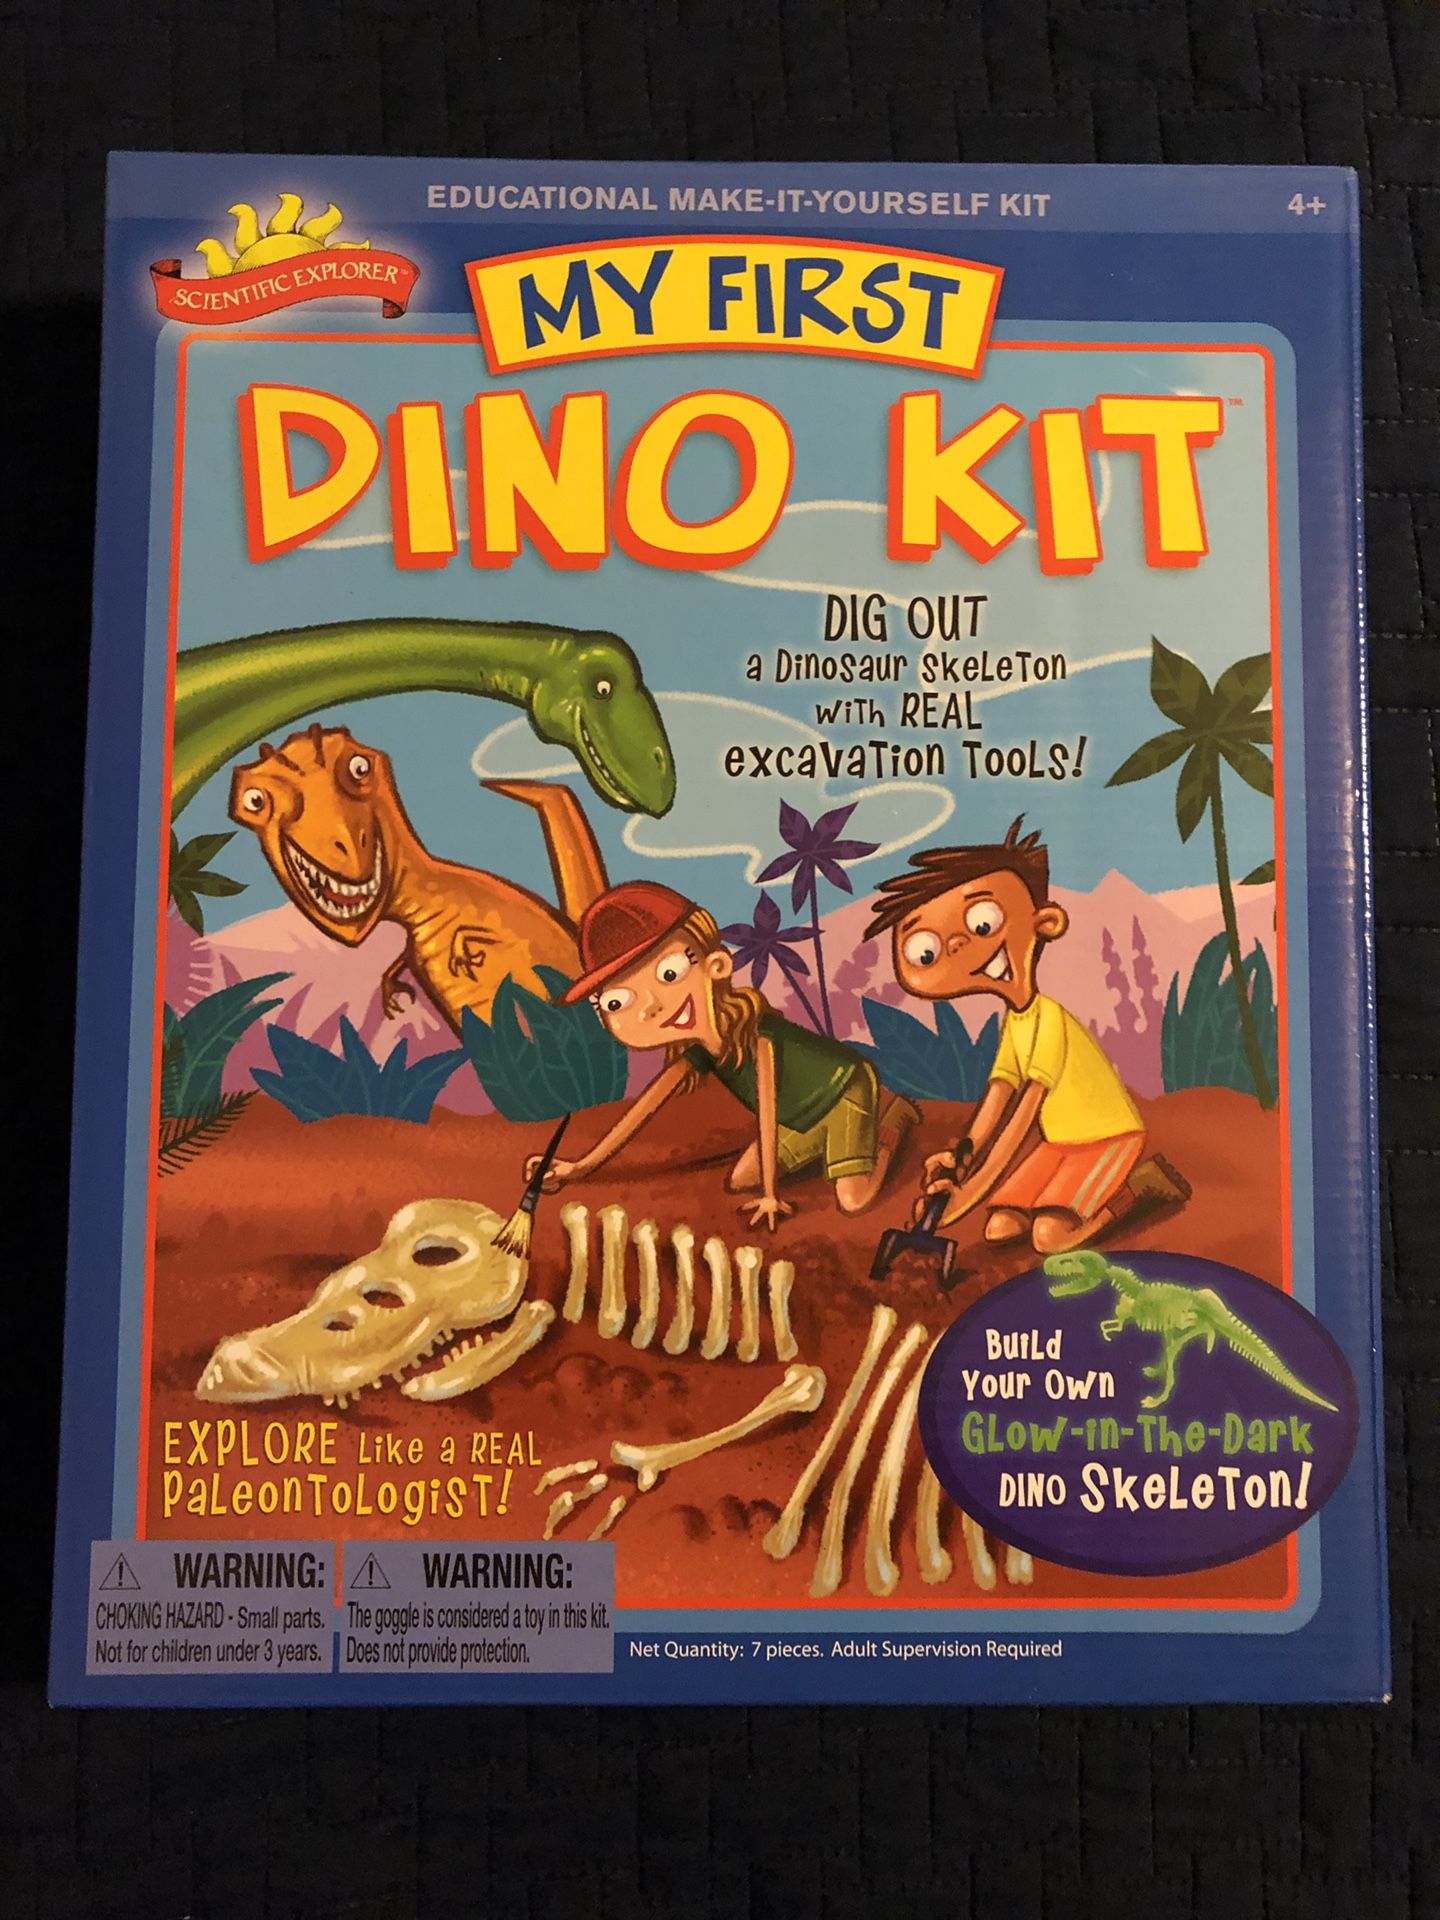 My first Dinosaur Kit